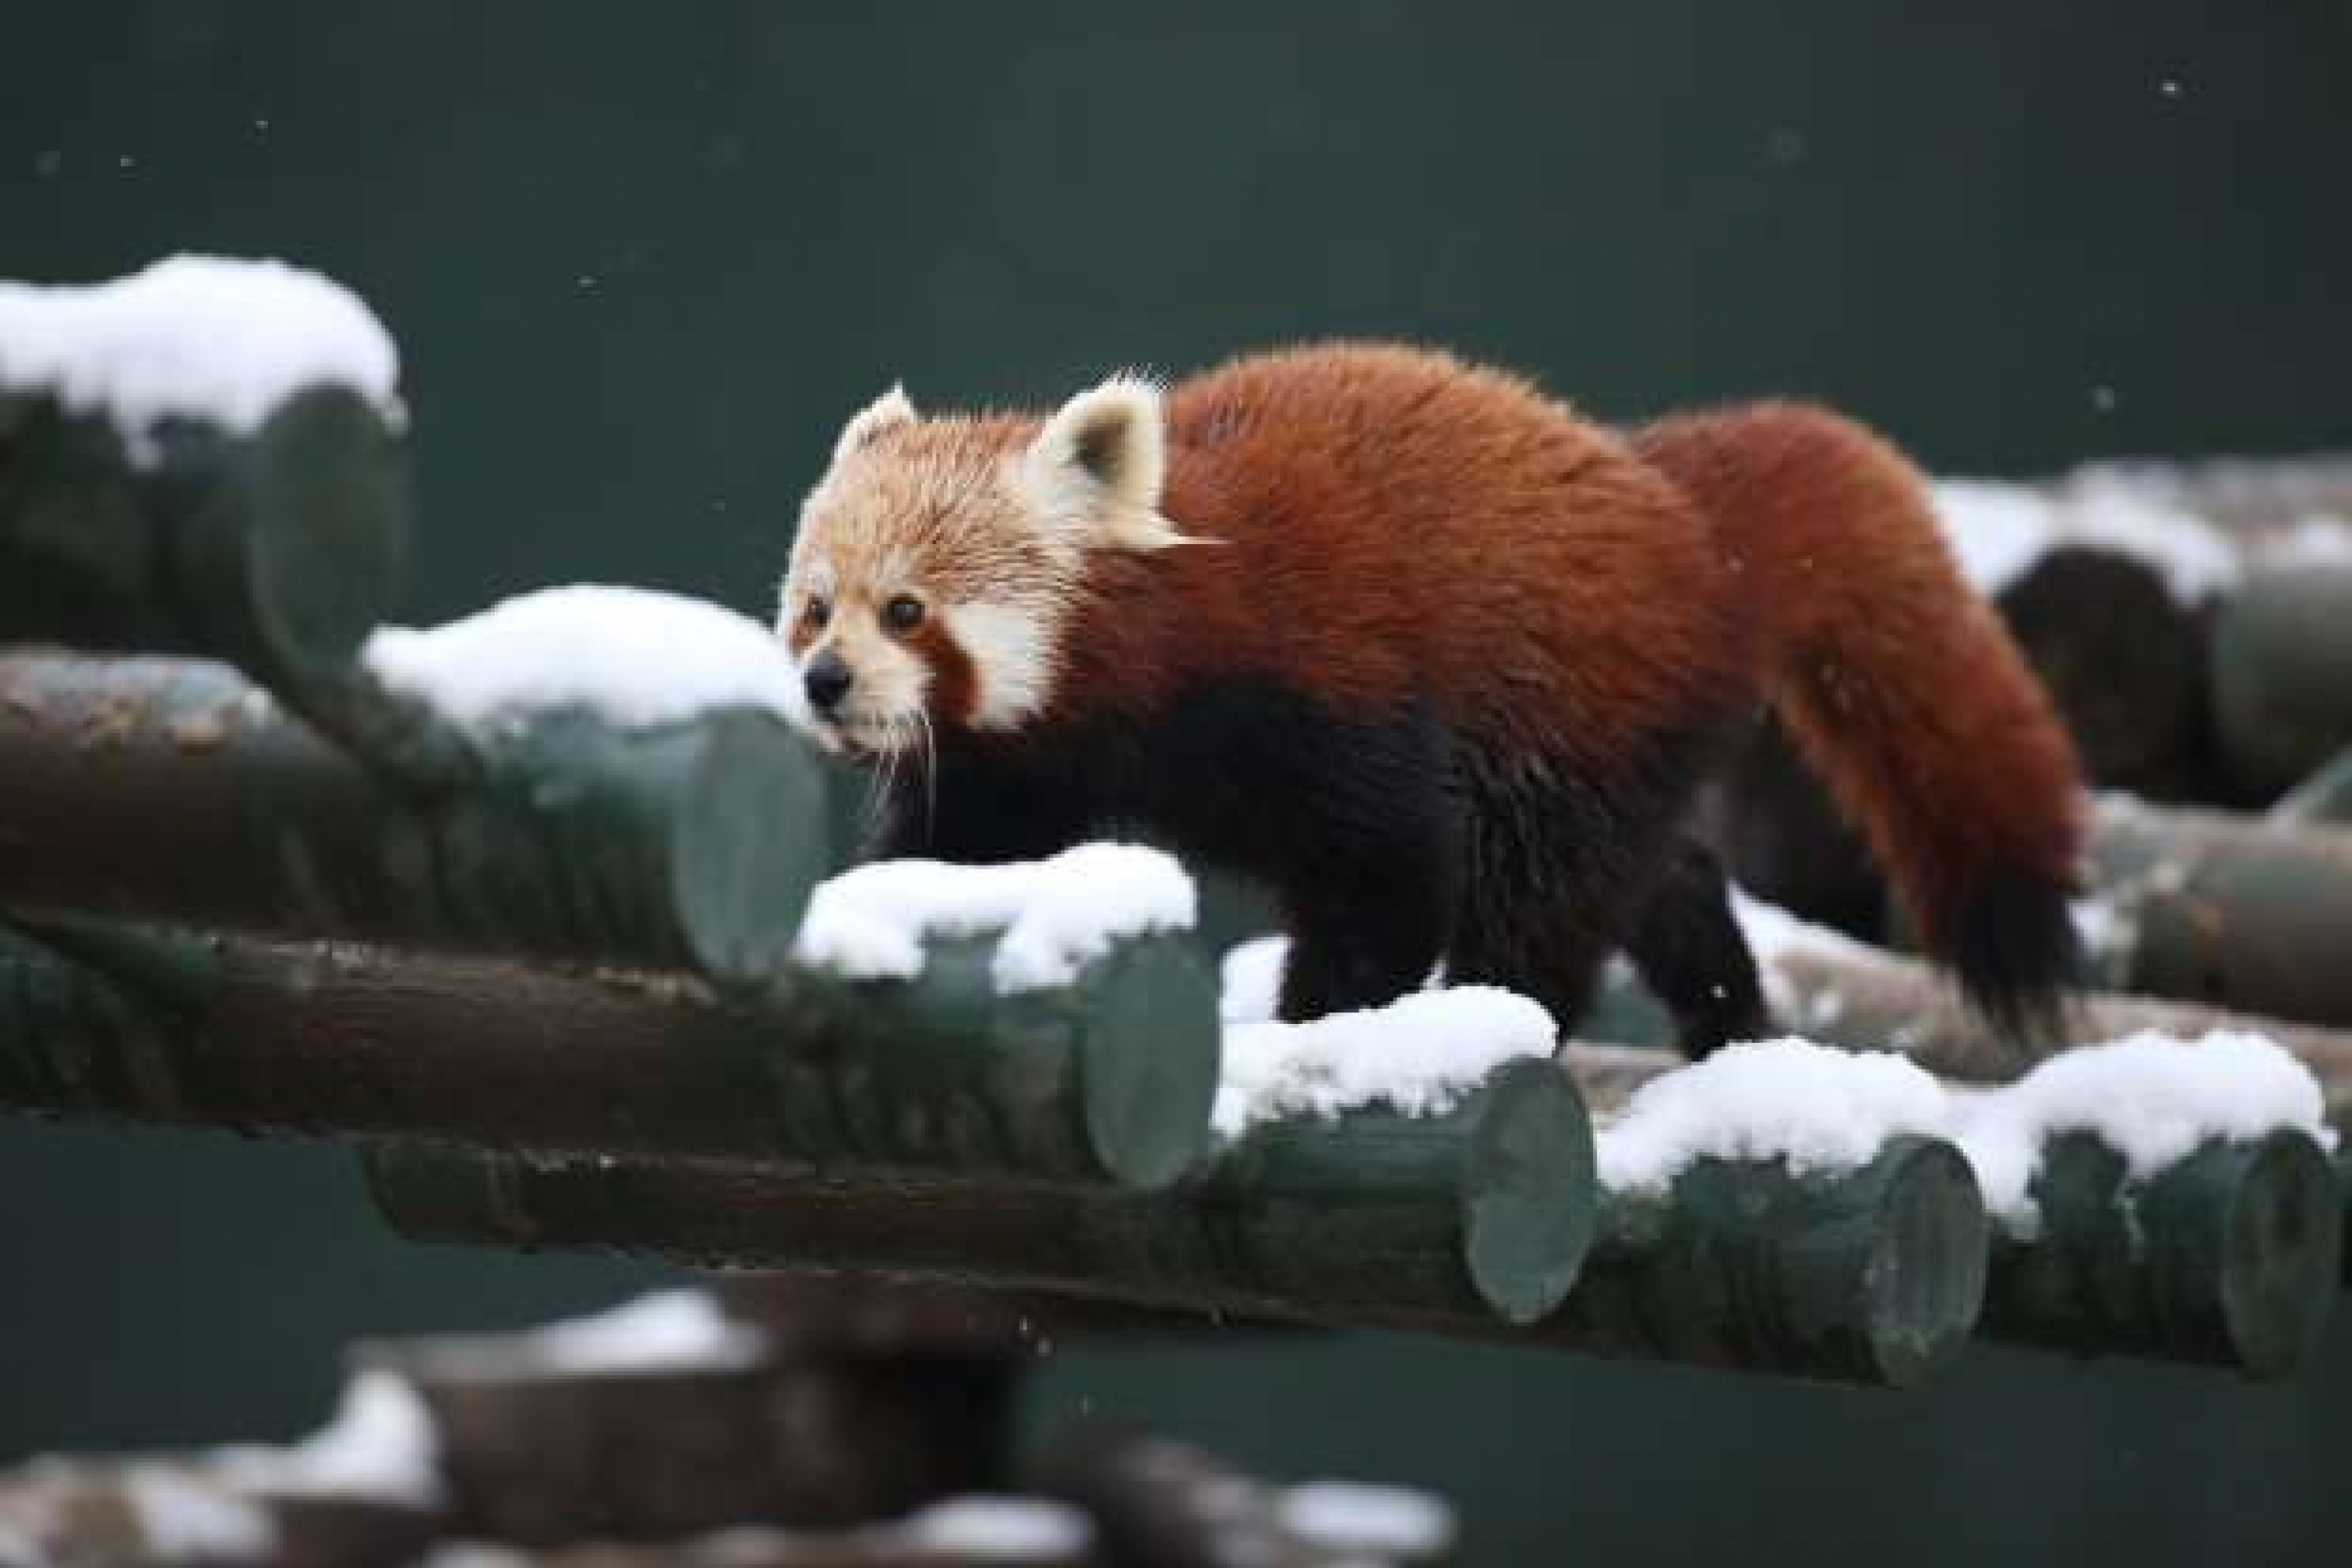 پاندا قرمز در محوطه خود در باغ وحش بورسا ، ترکیه ، در تاریخ 8 ژانویه پرسه می زند